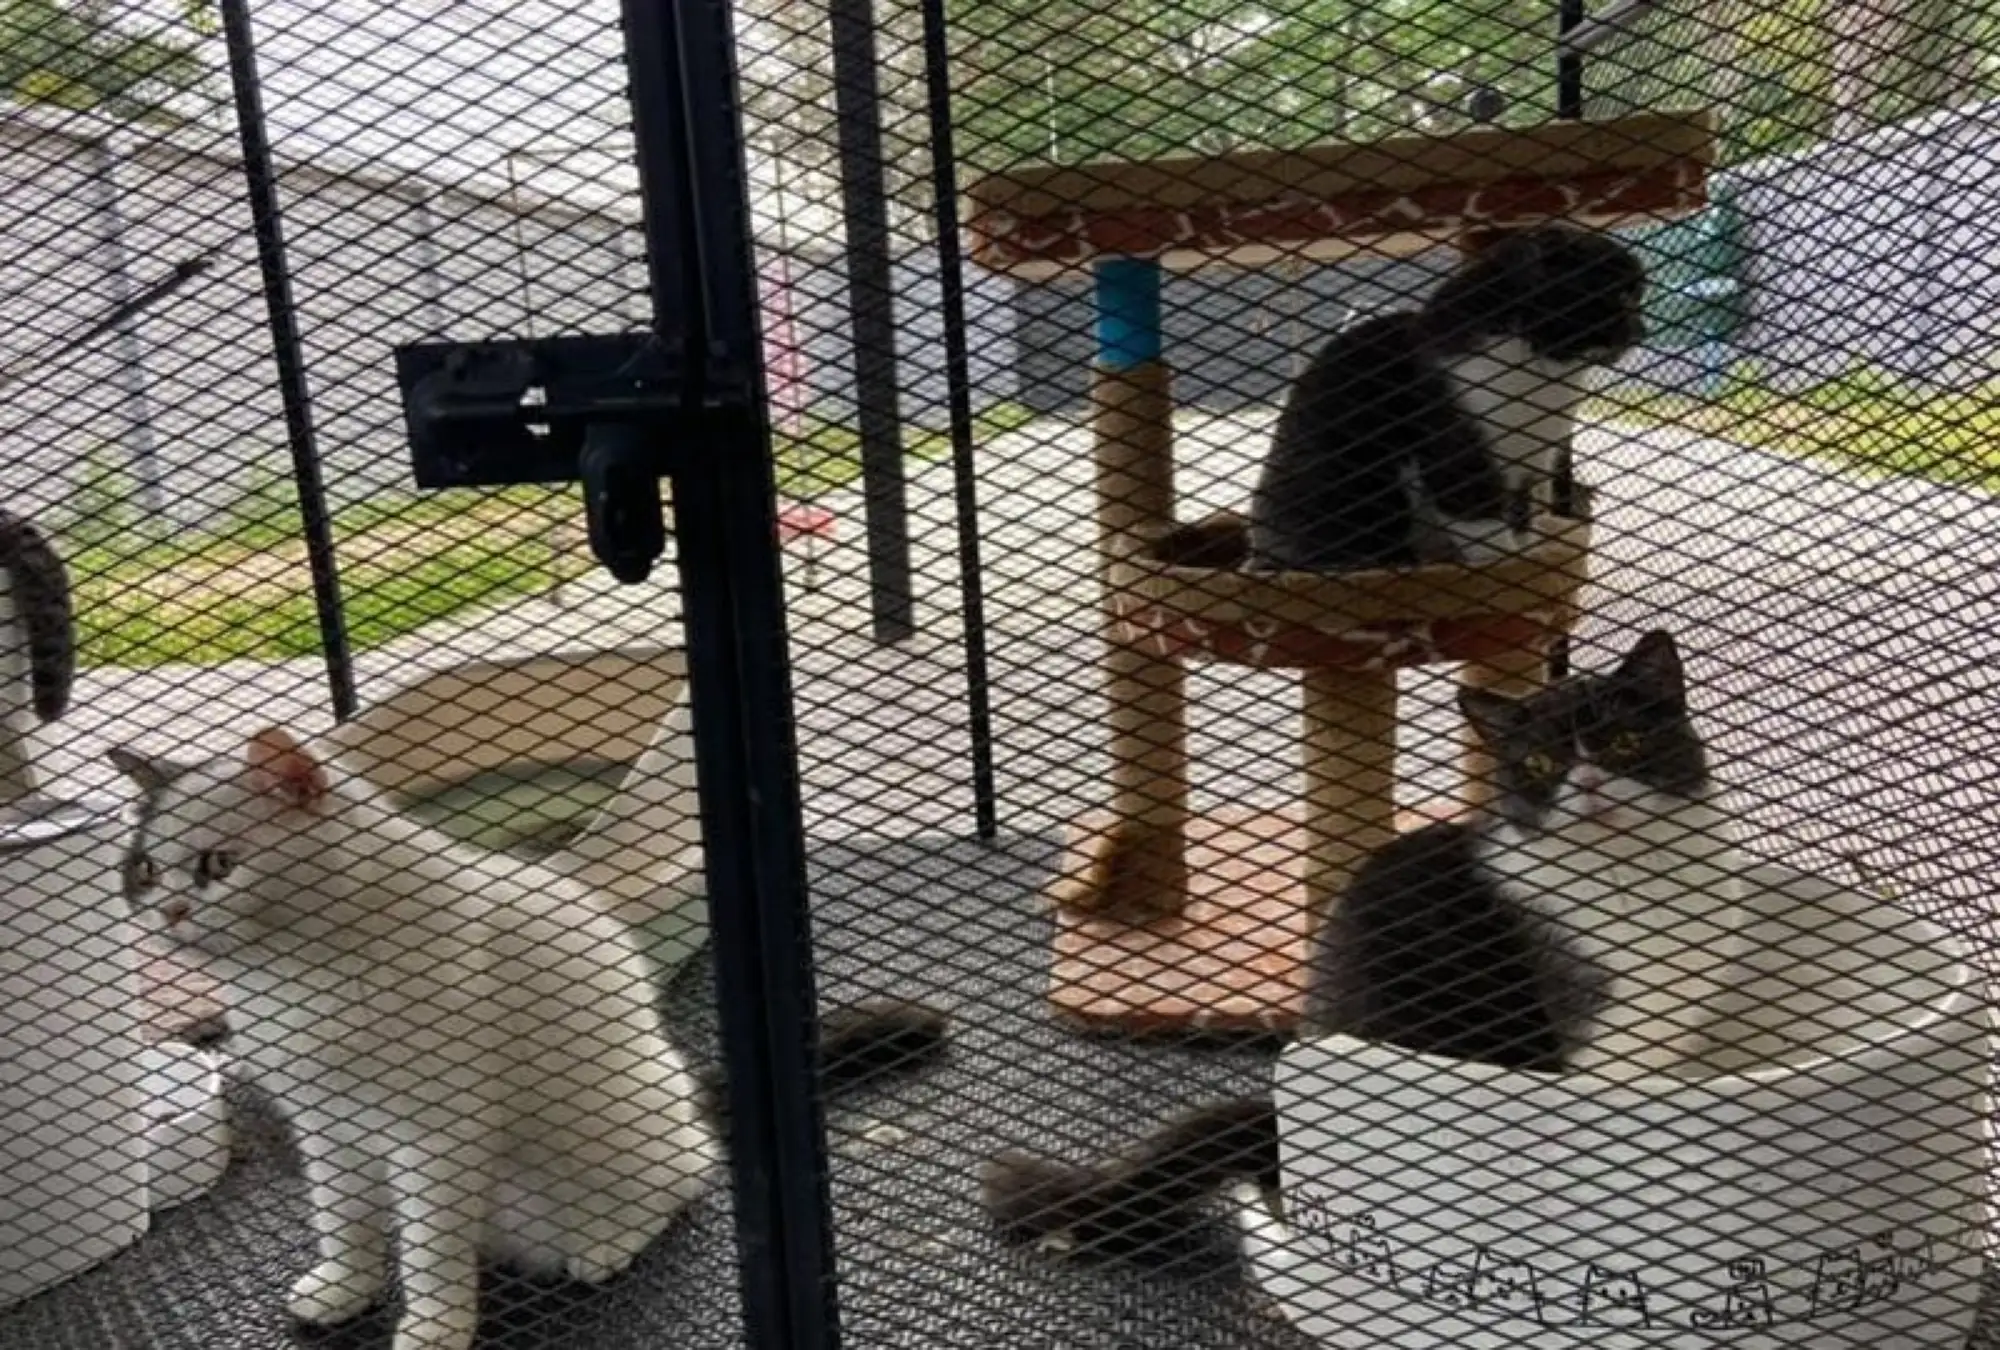 目前，这些猫咪由当地村长暂时照看（图片来源：youtube影片截图）